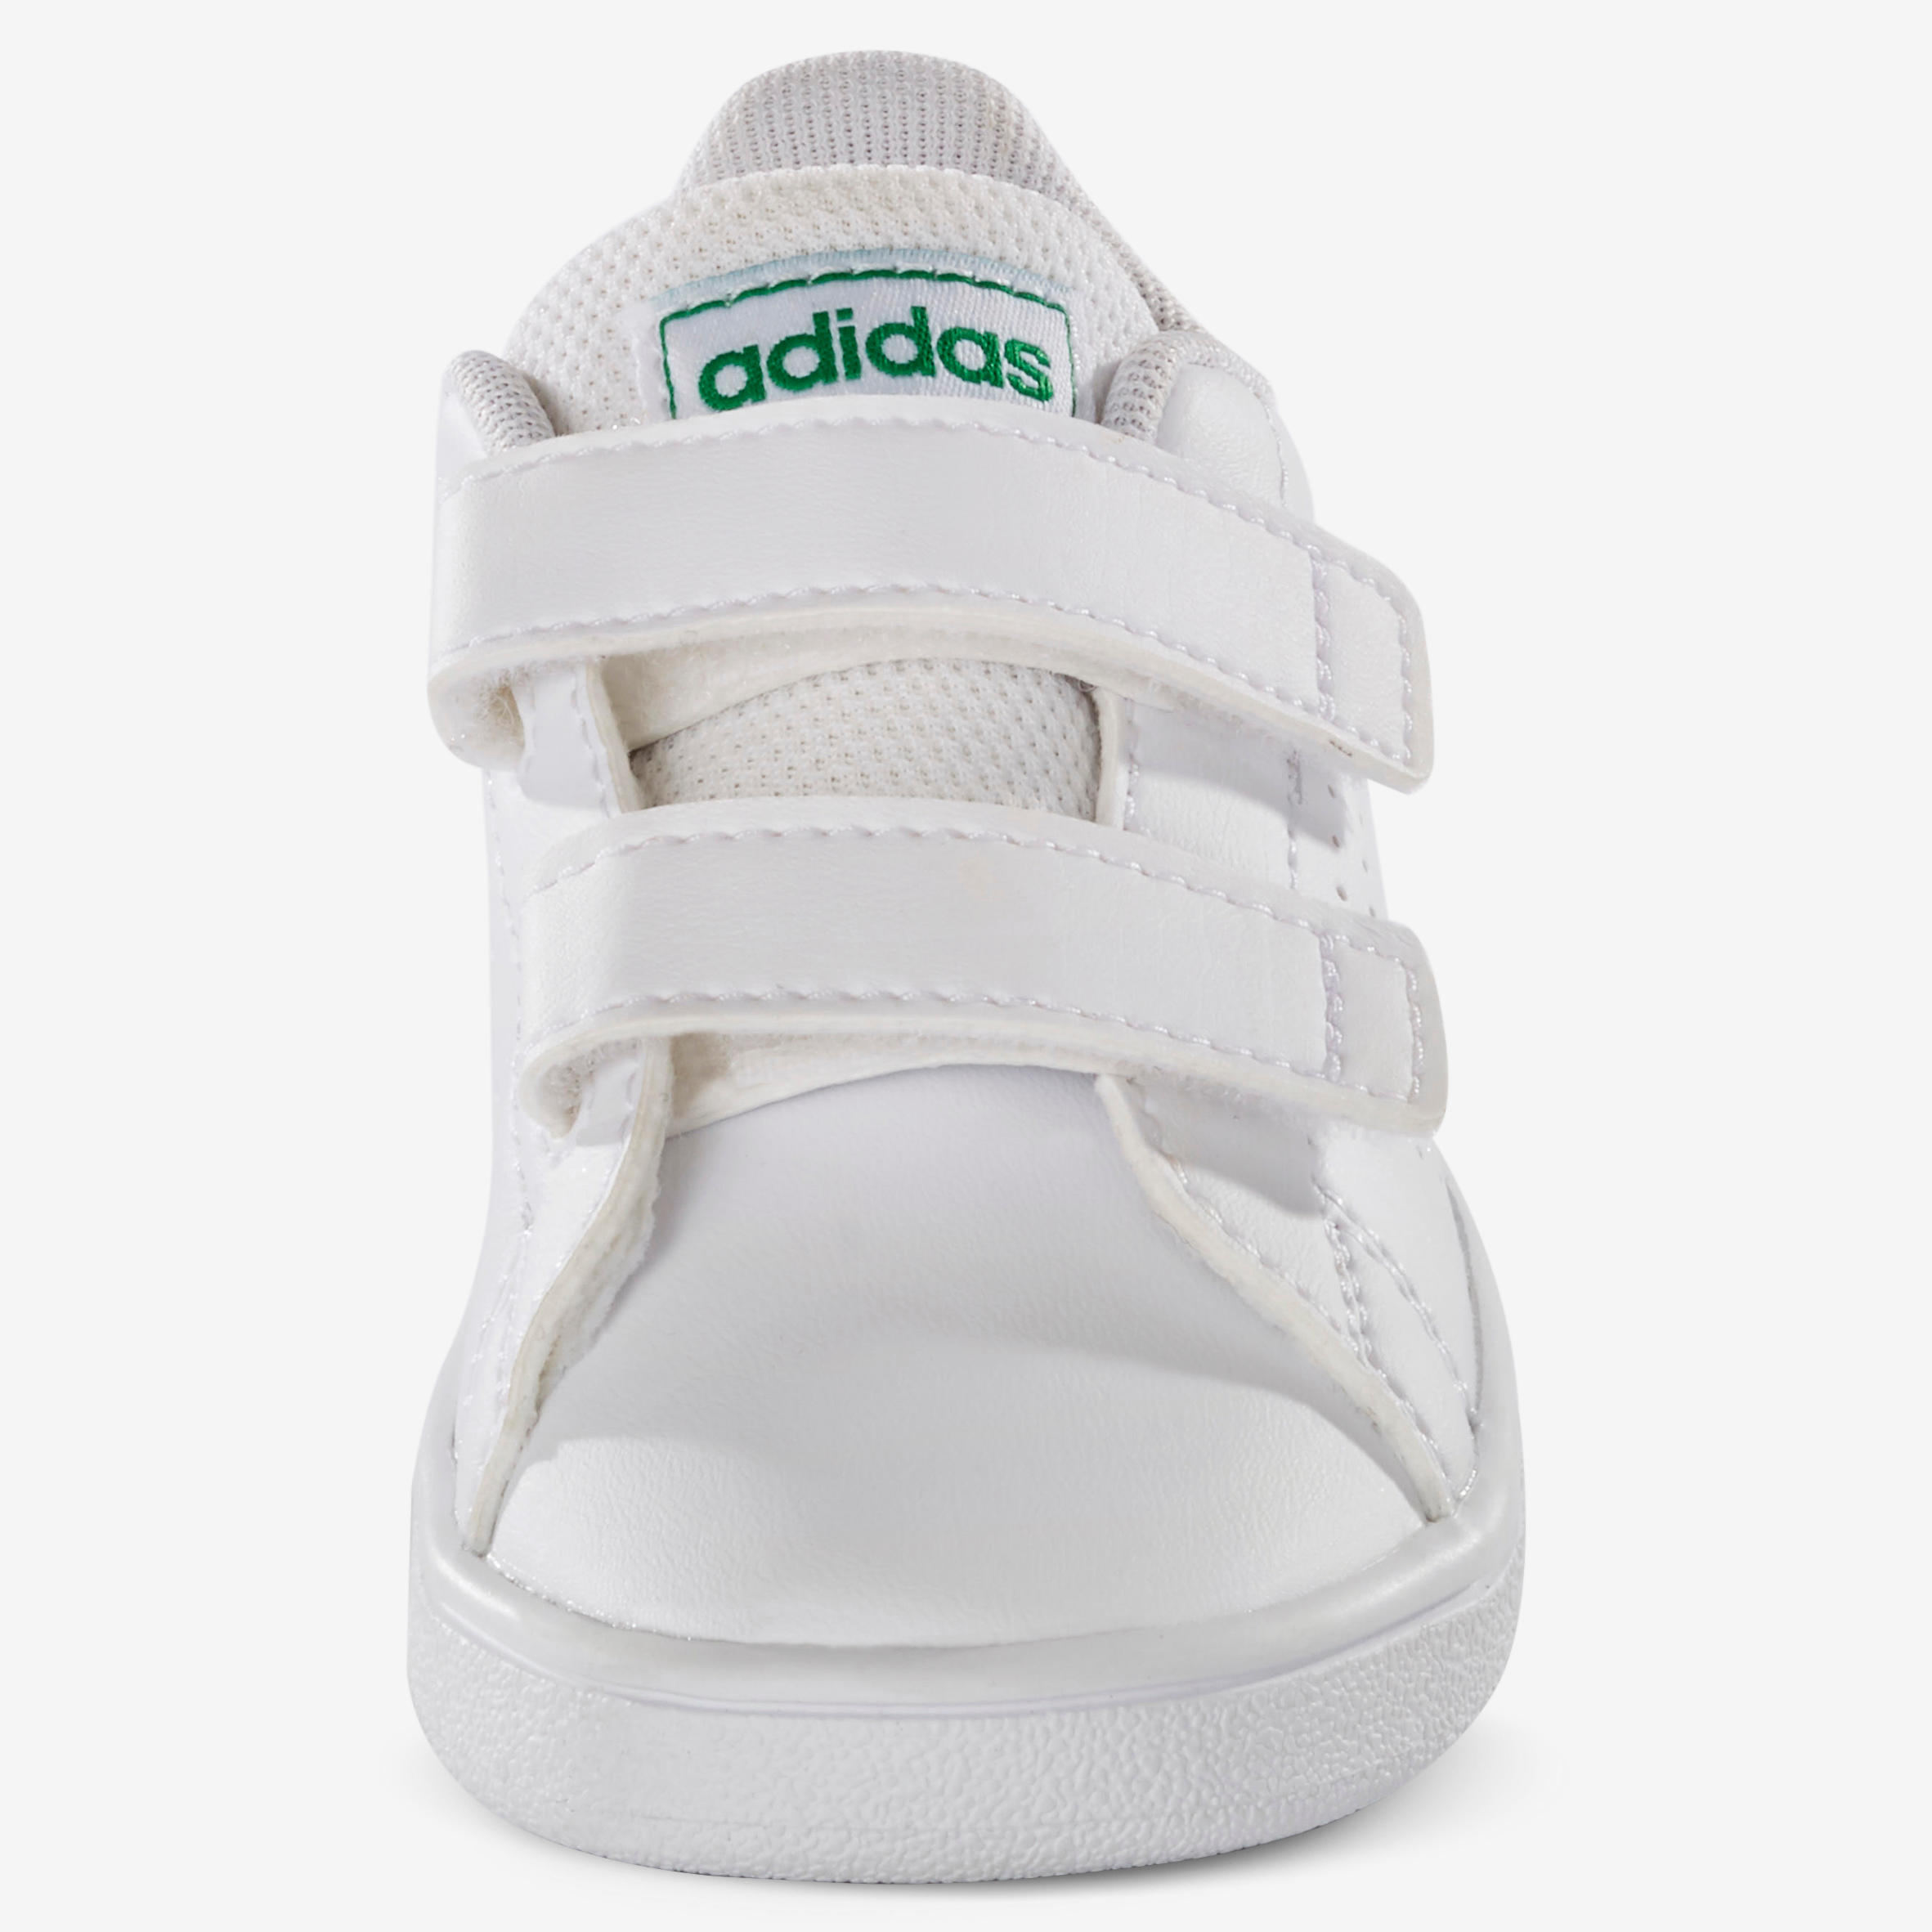 Zapatillas Adidas Bebé primeros pasos Advantage blanco verde talla 19 al 27  ADIDAS | Decathlon